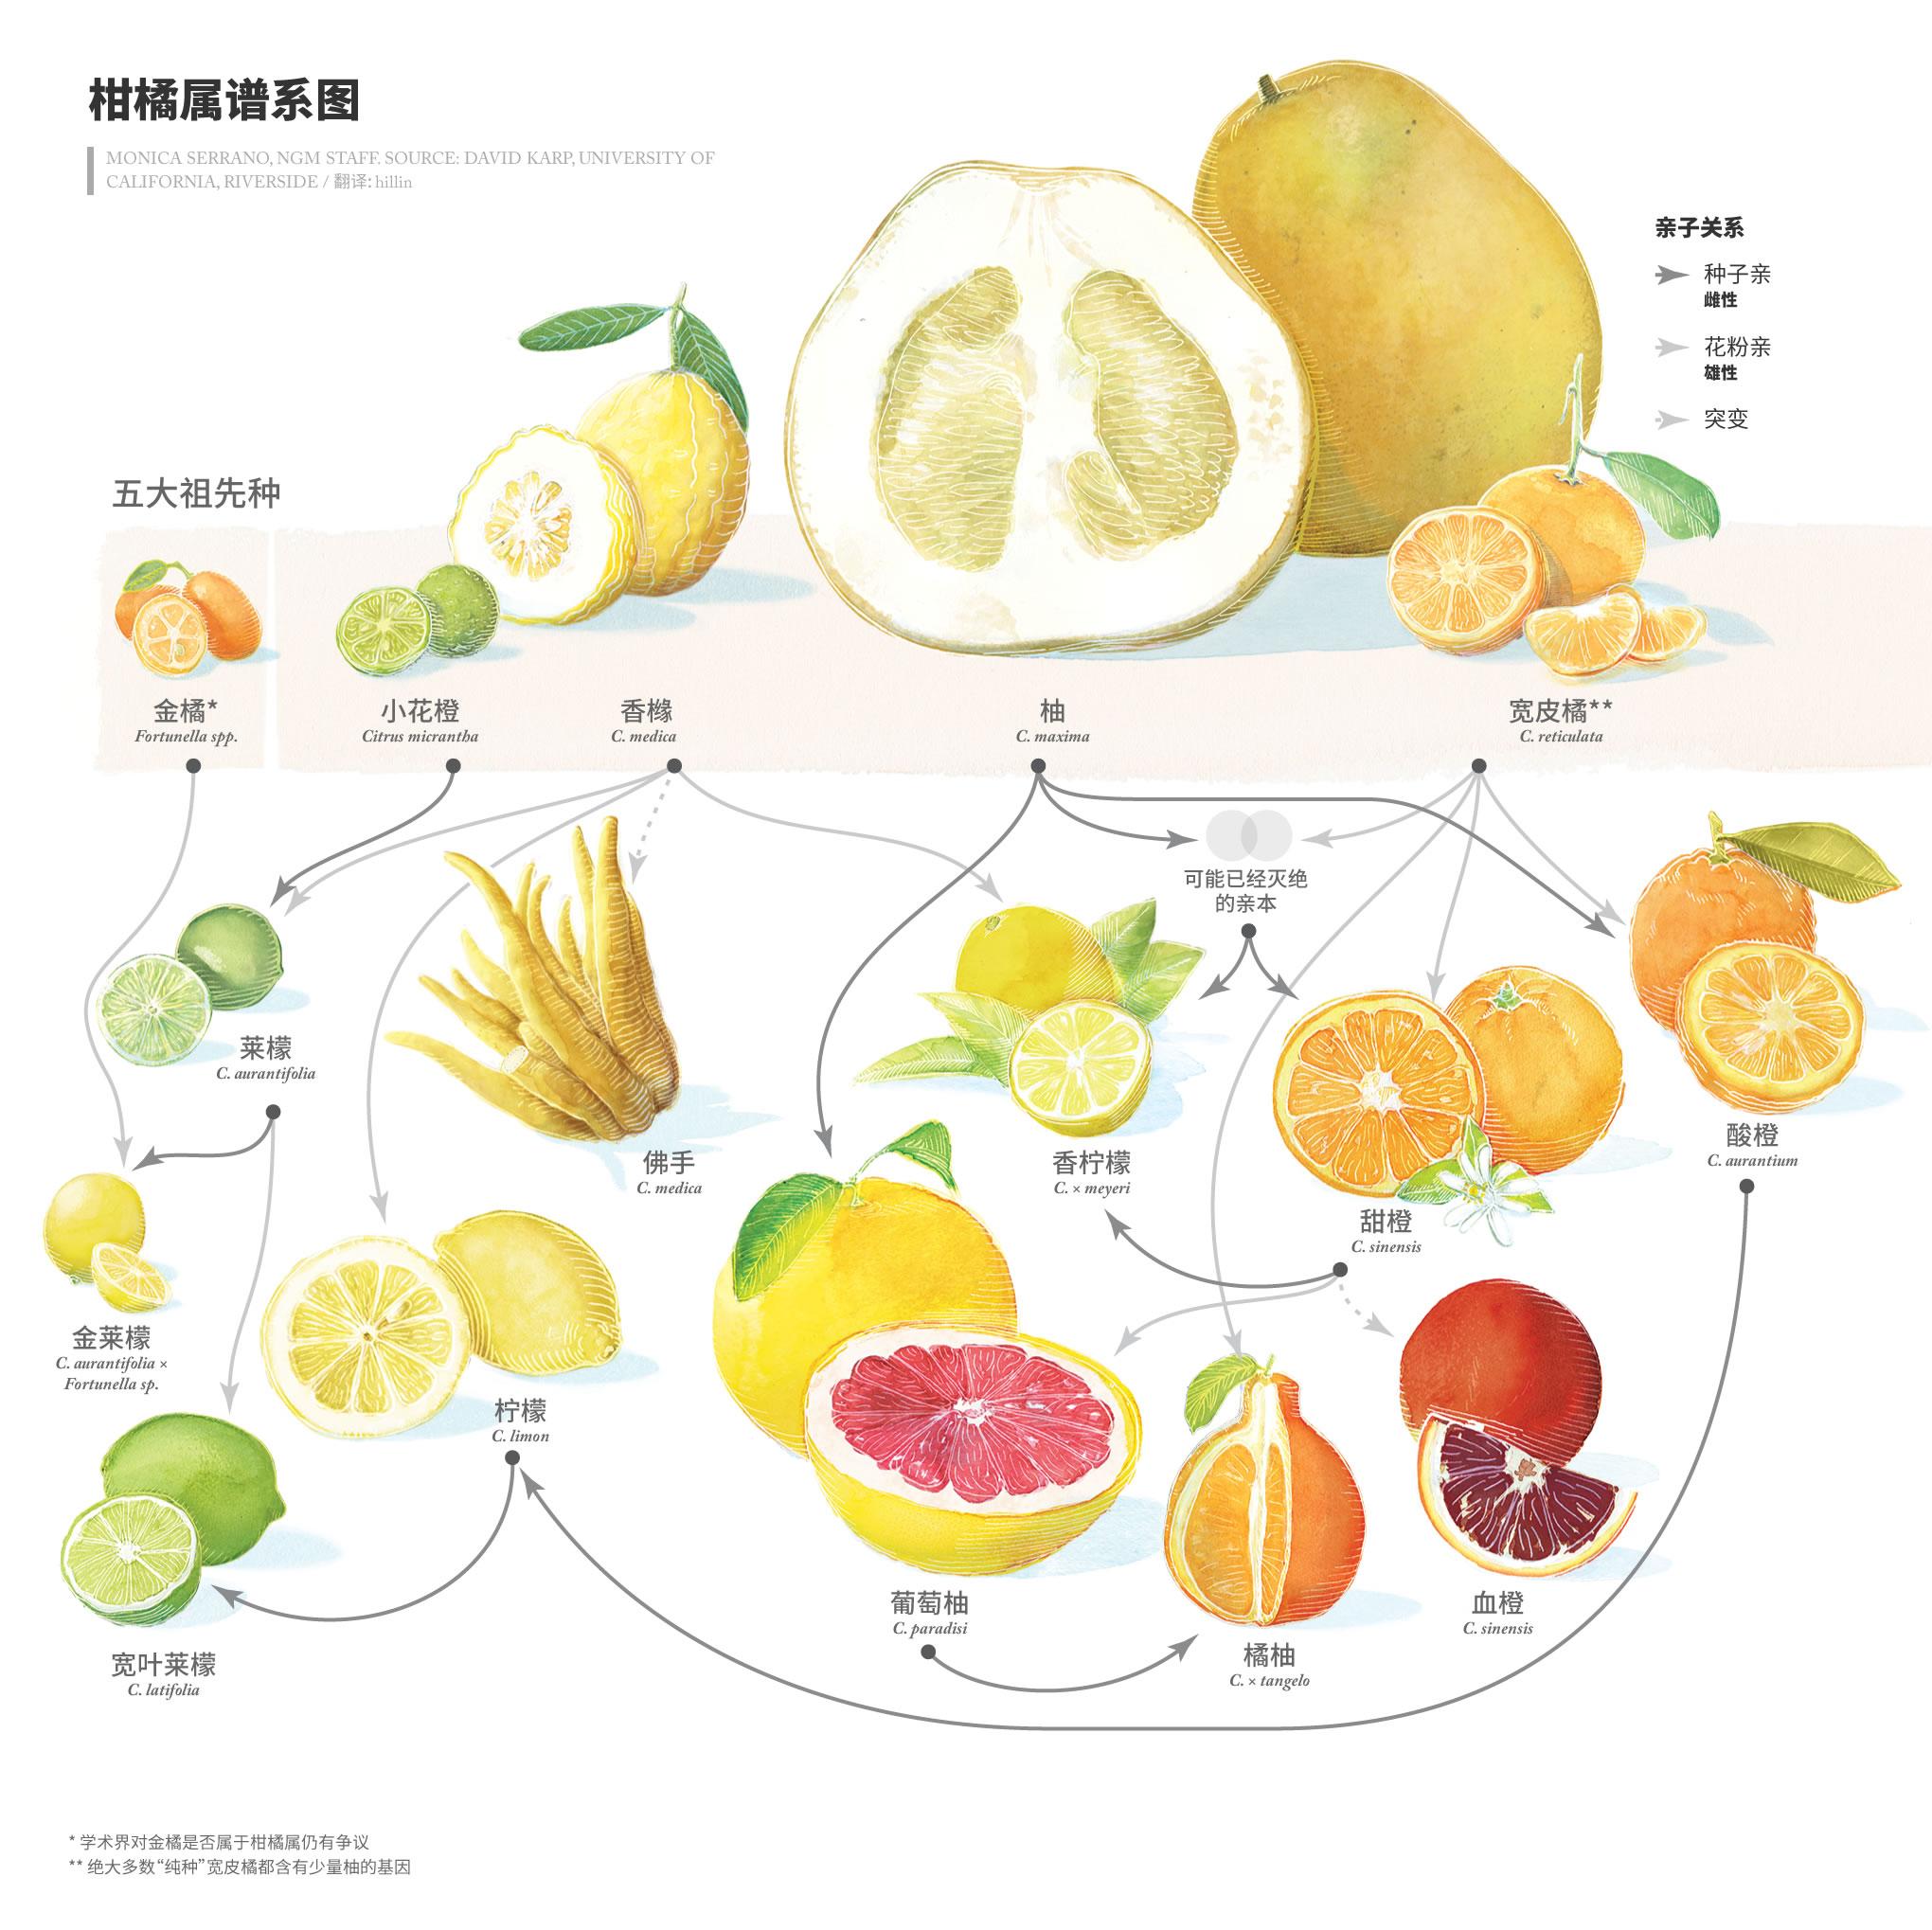 柠檬,橙和柑到底是什么关系? 